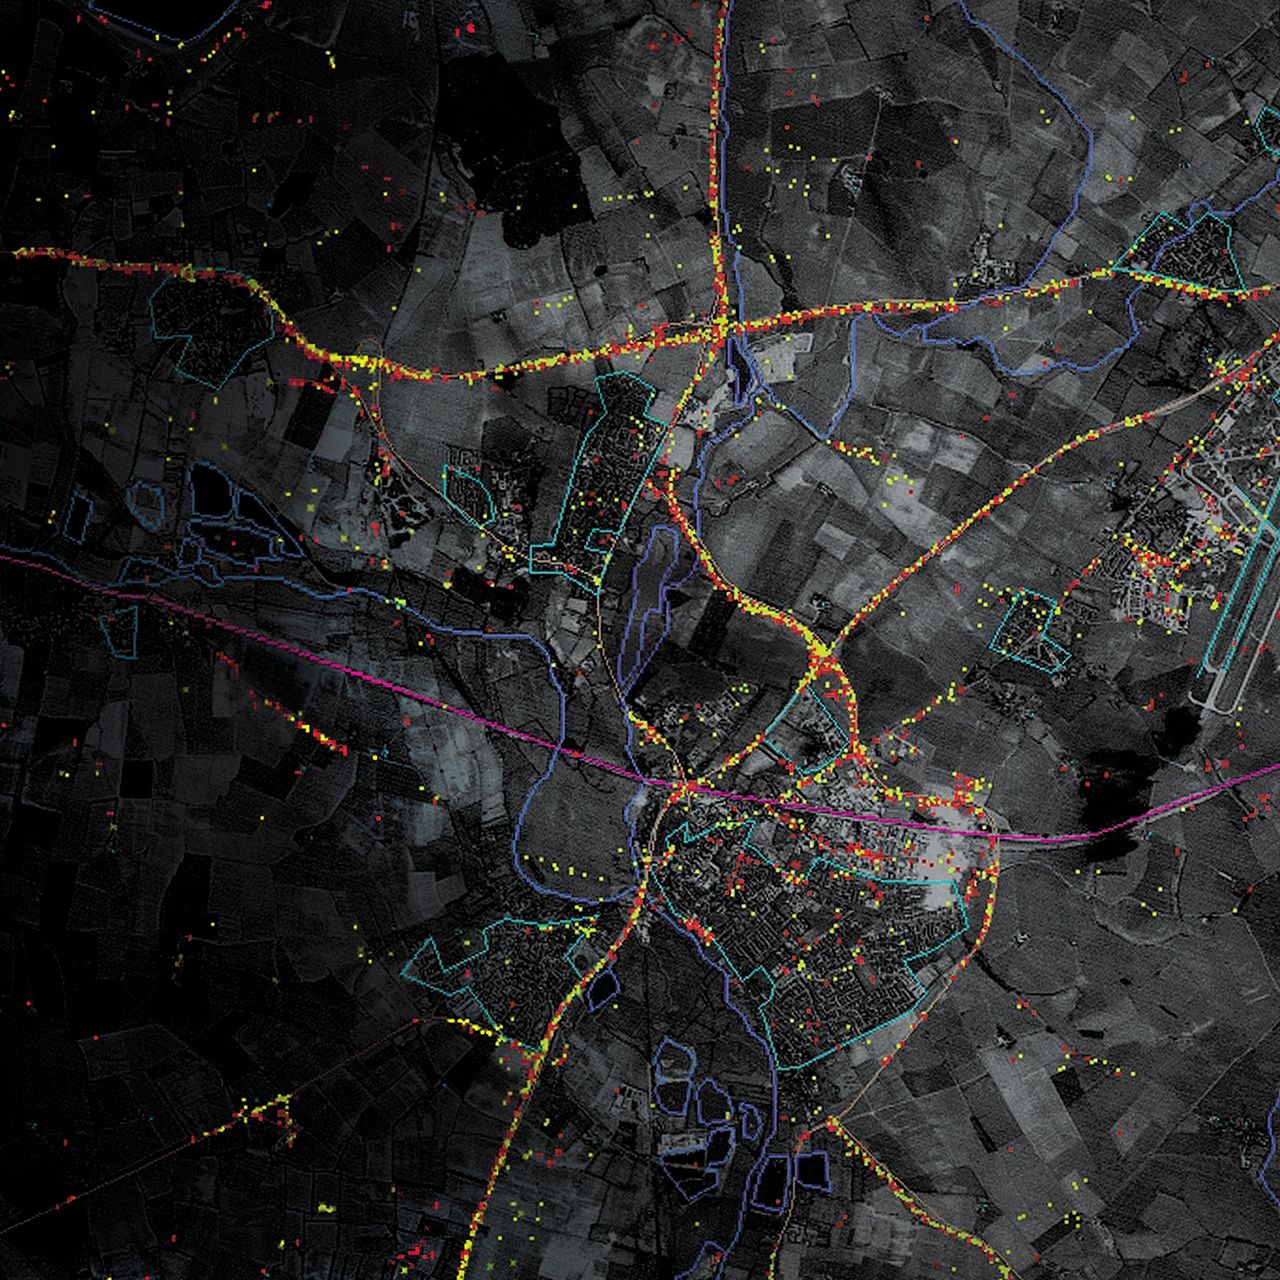 Obrazowanie danych z radaru - kolorowe kropki naniesione na mapę to wykryte pojazdy i inne obiekty